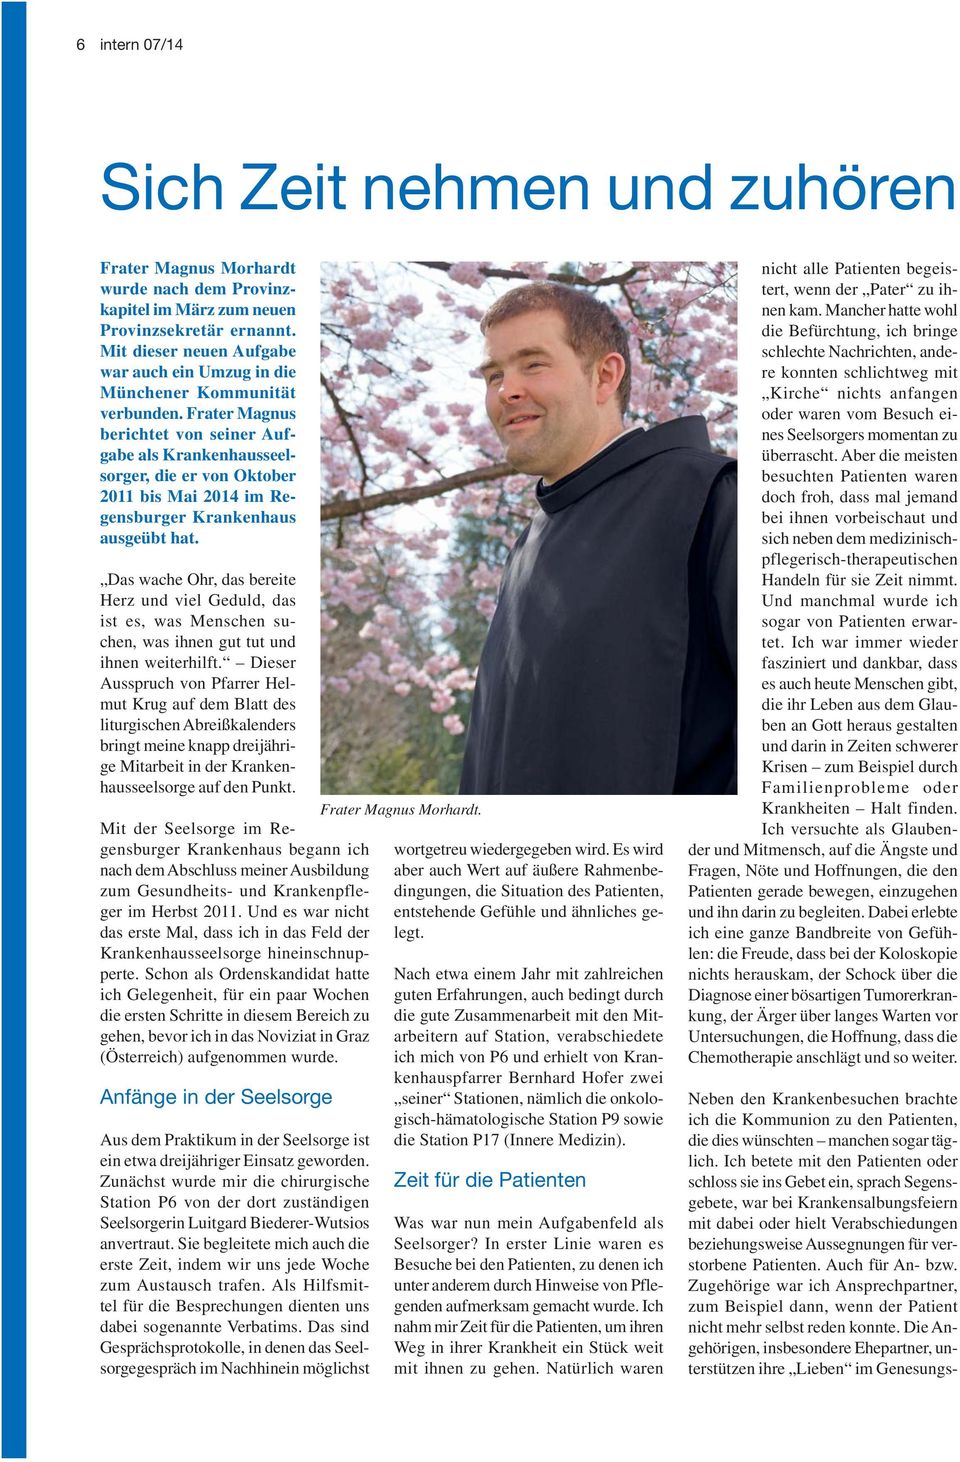 Frater Magnus berichtet von seiner Aufgabe als Krankenhausseelsorger, die er von Oktober 2011 bis Mai 2014 im Regensburger Krankenhaus ausgeübt hat.